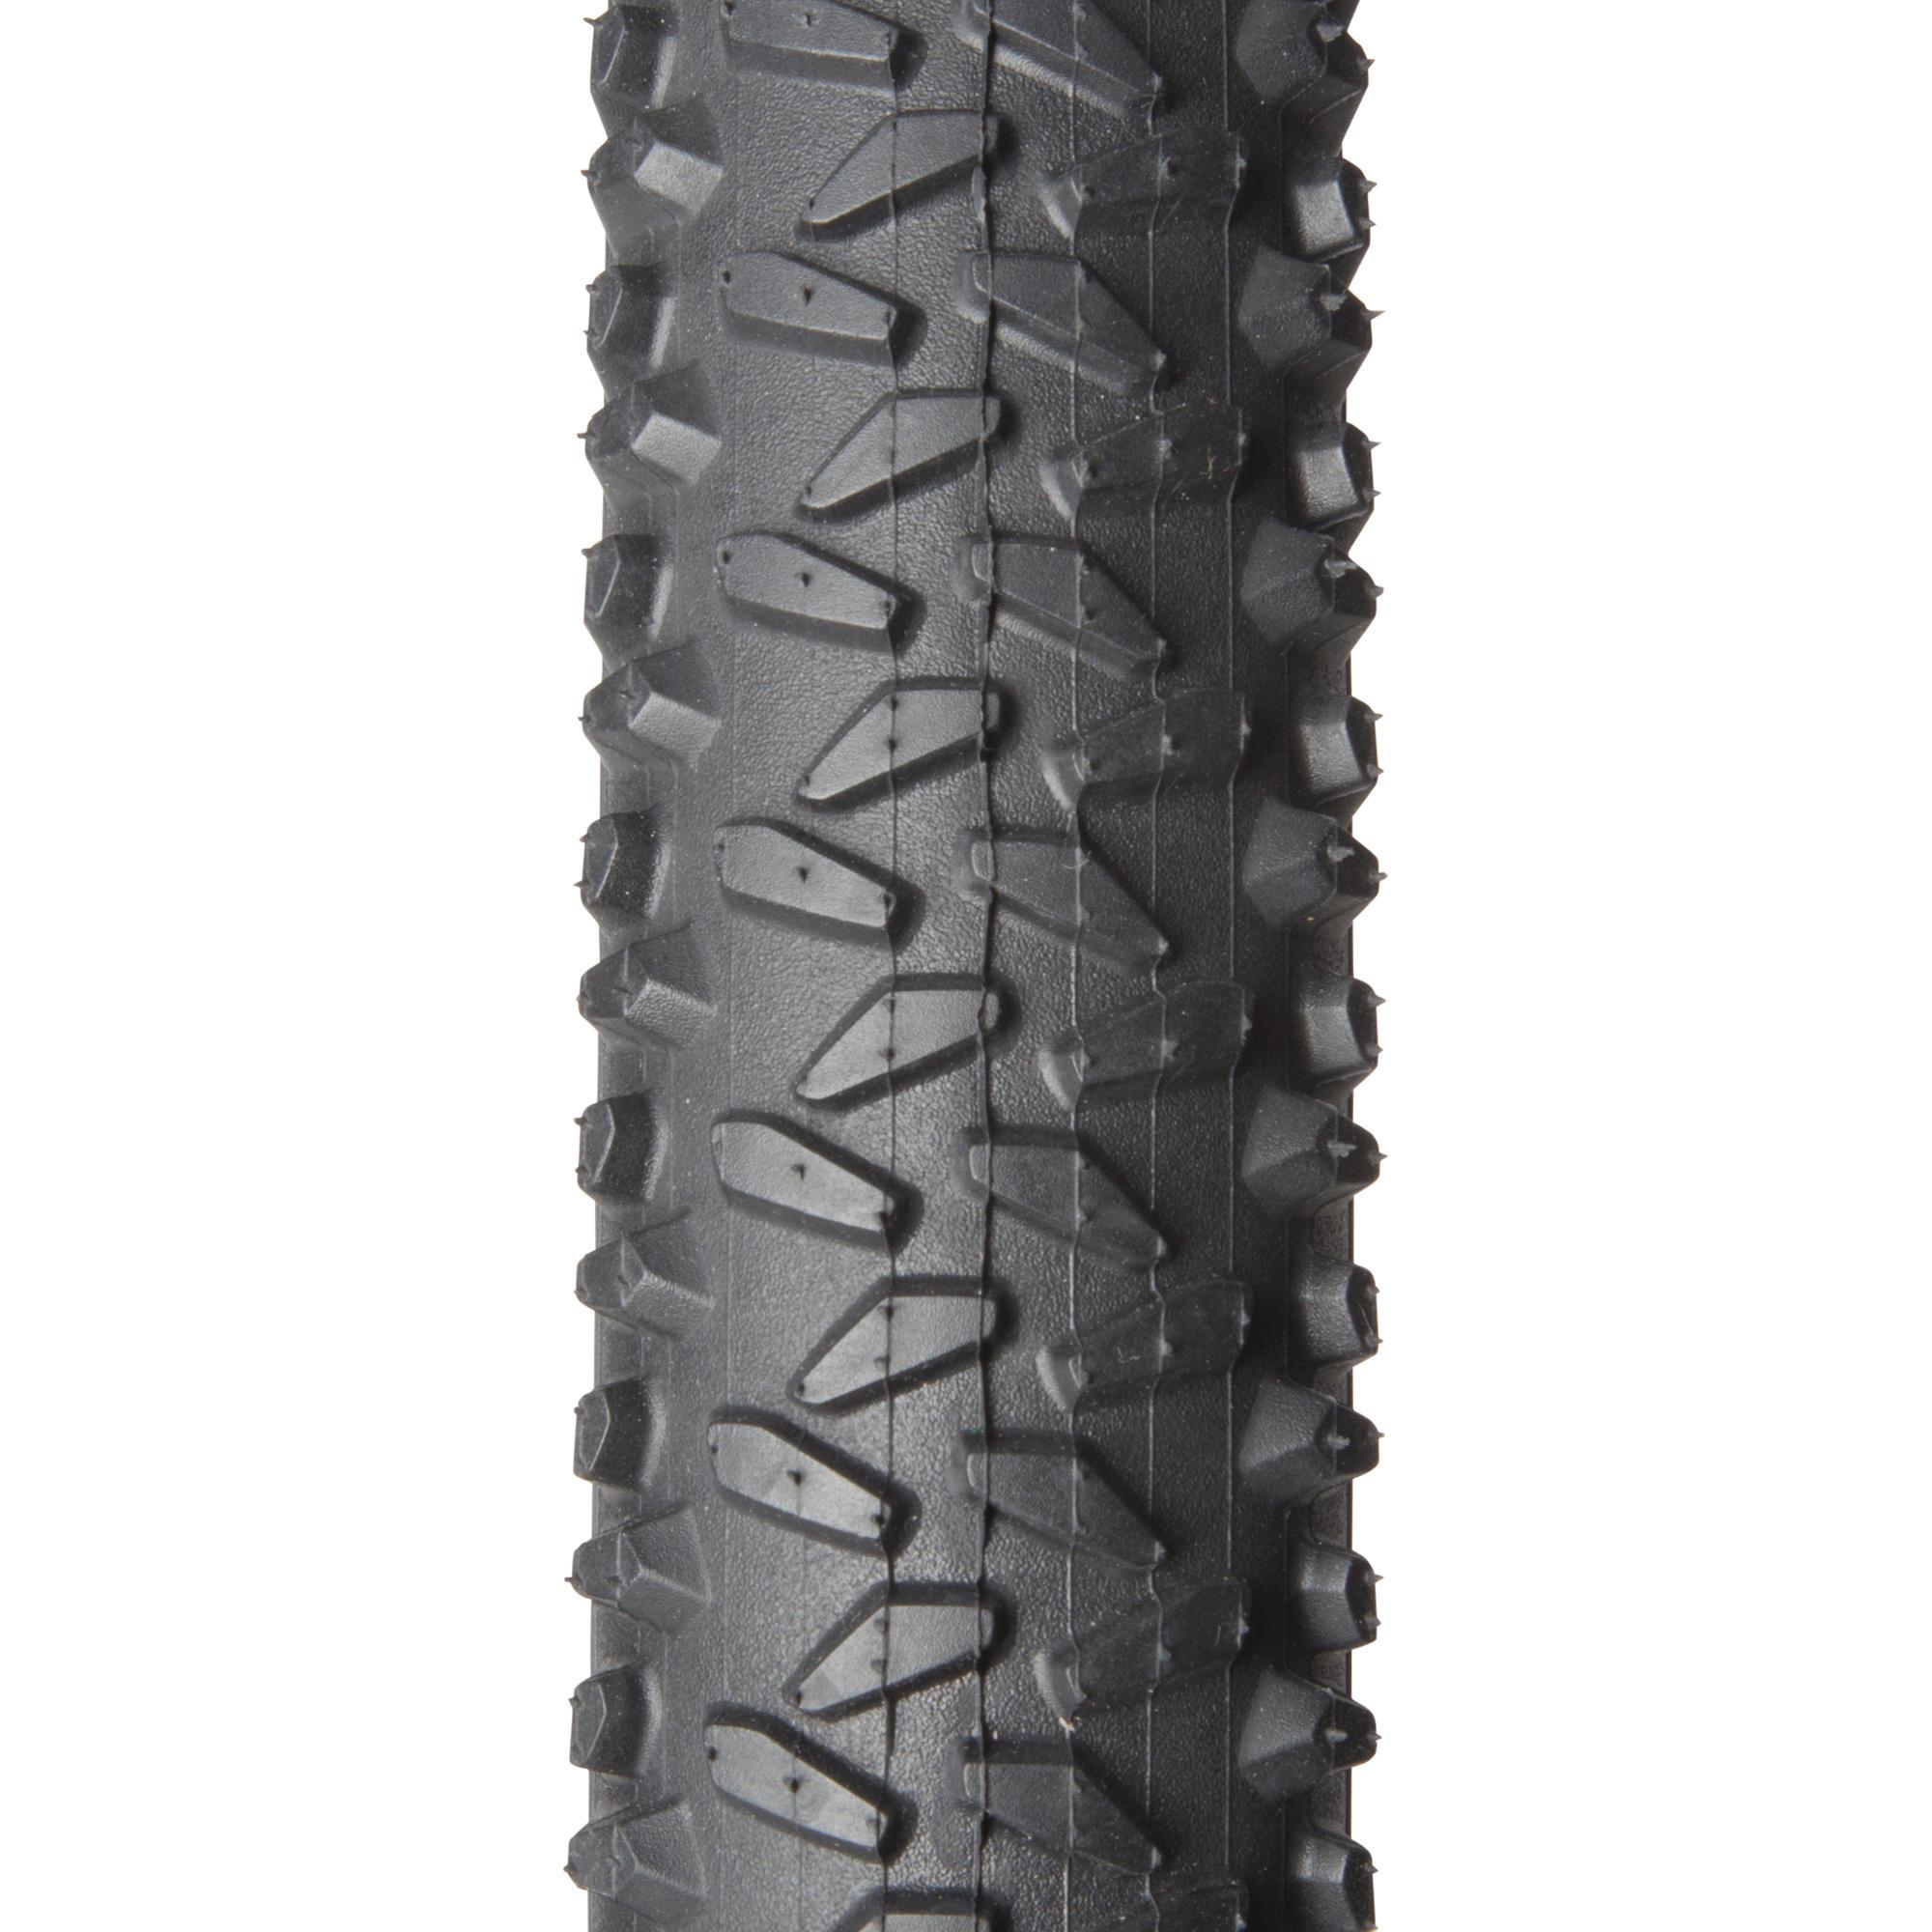 29 x 2.0 mountain bike tires